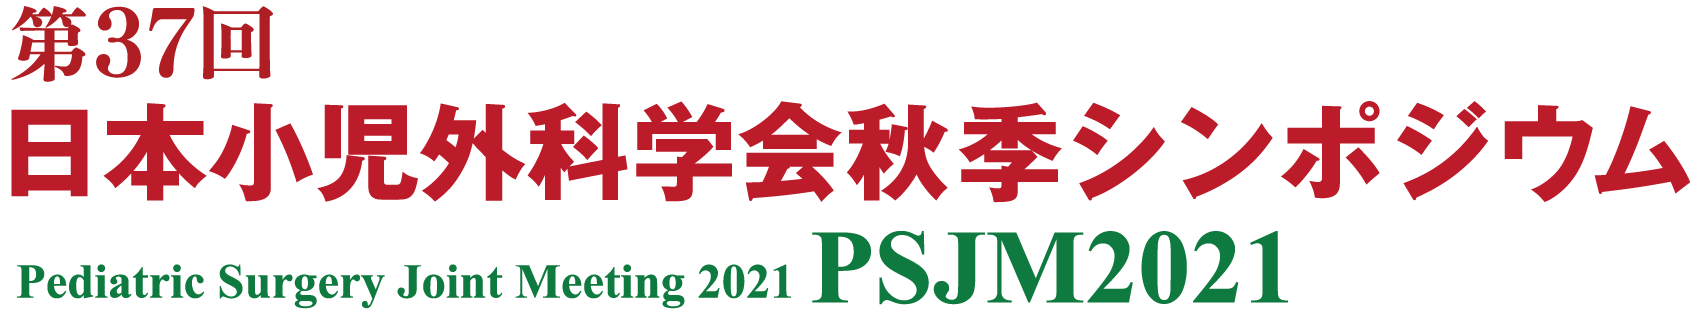 第37回日本小児外科学会 秋季シンポジウム / PSJM2021